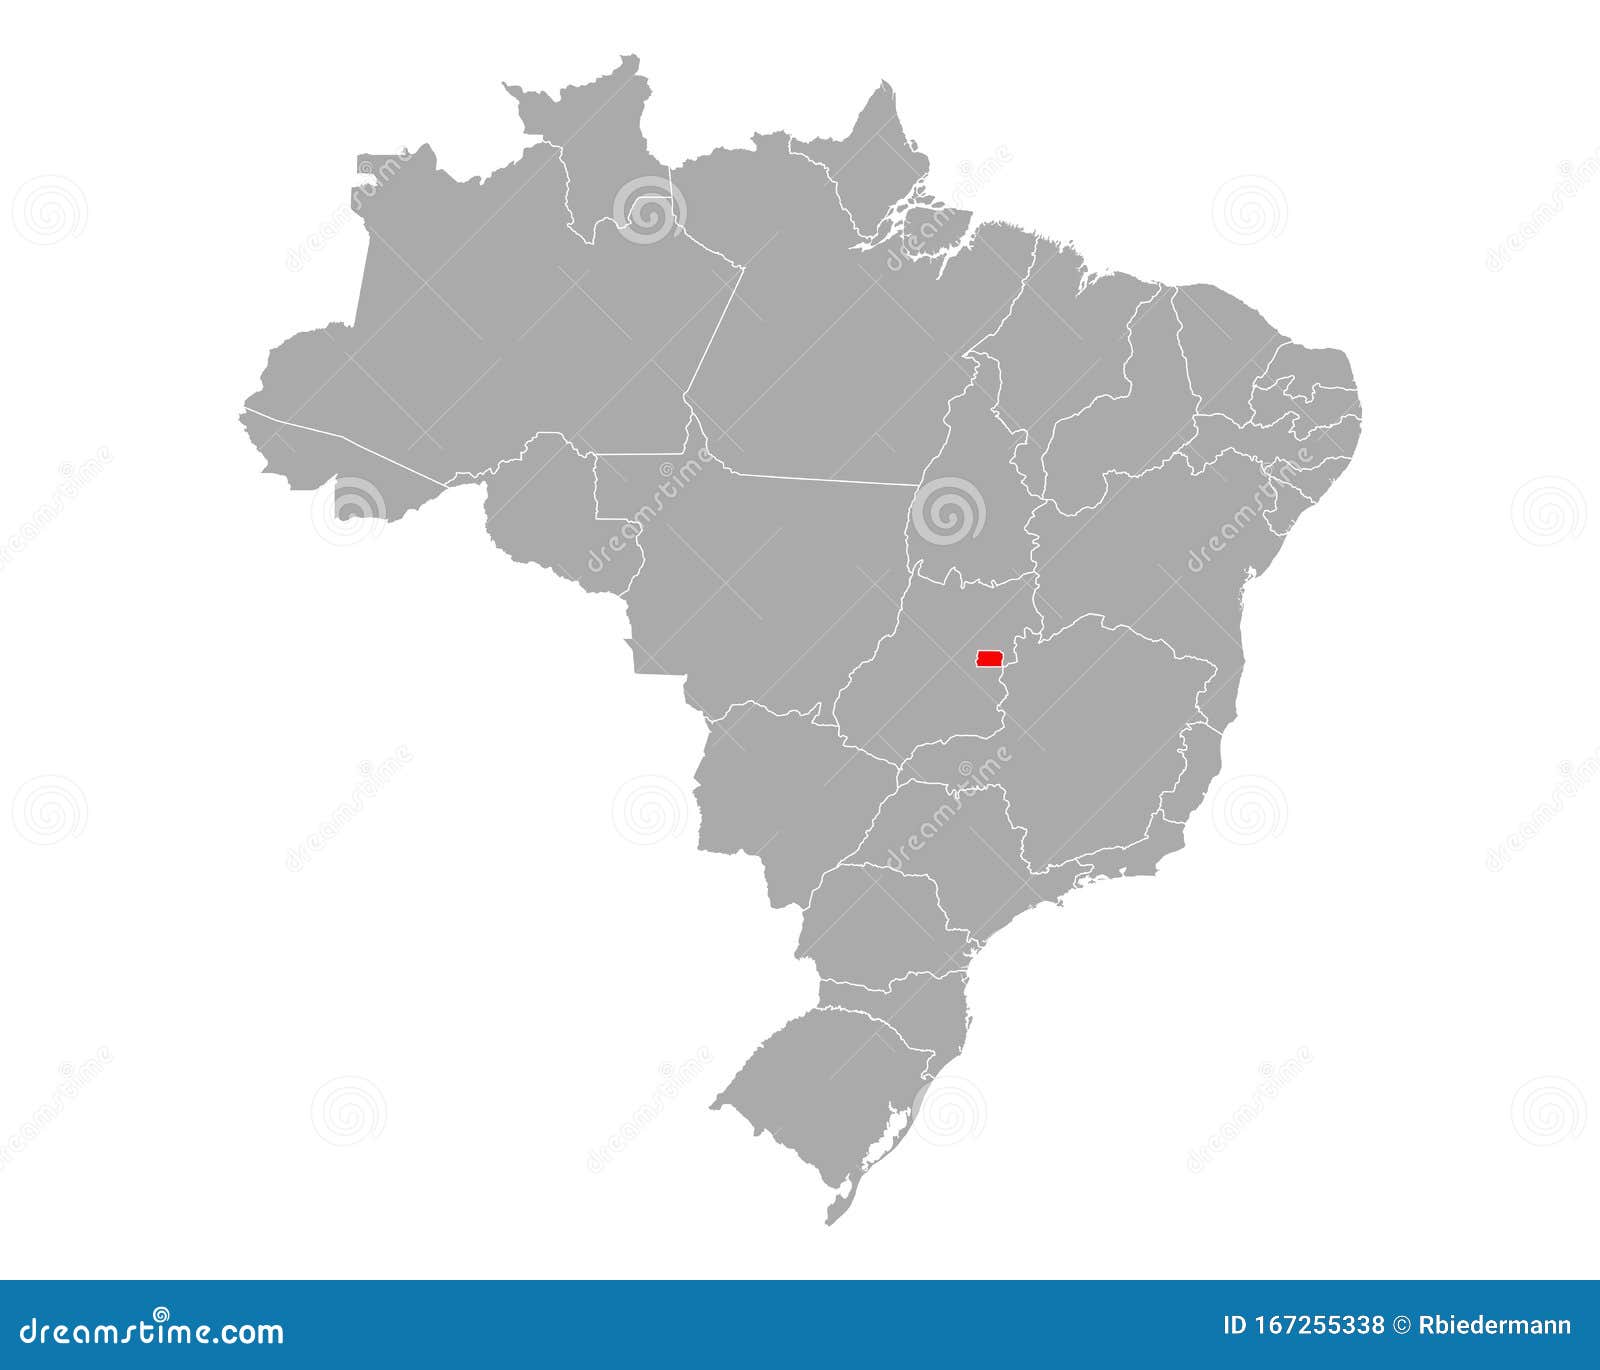 map of distrito federal do brasil in brazil